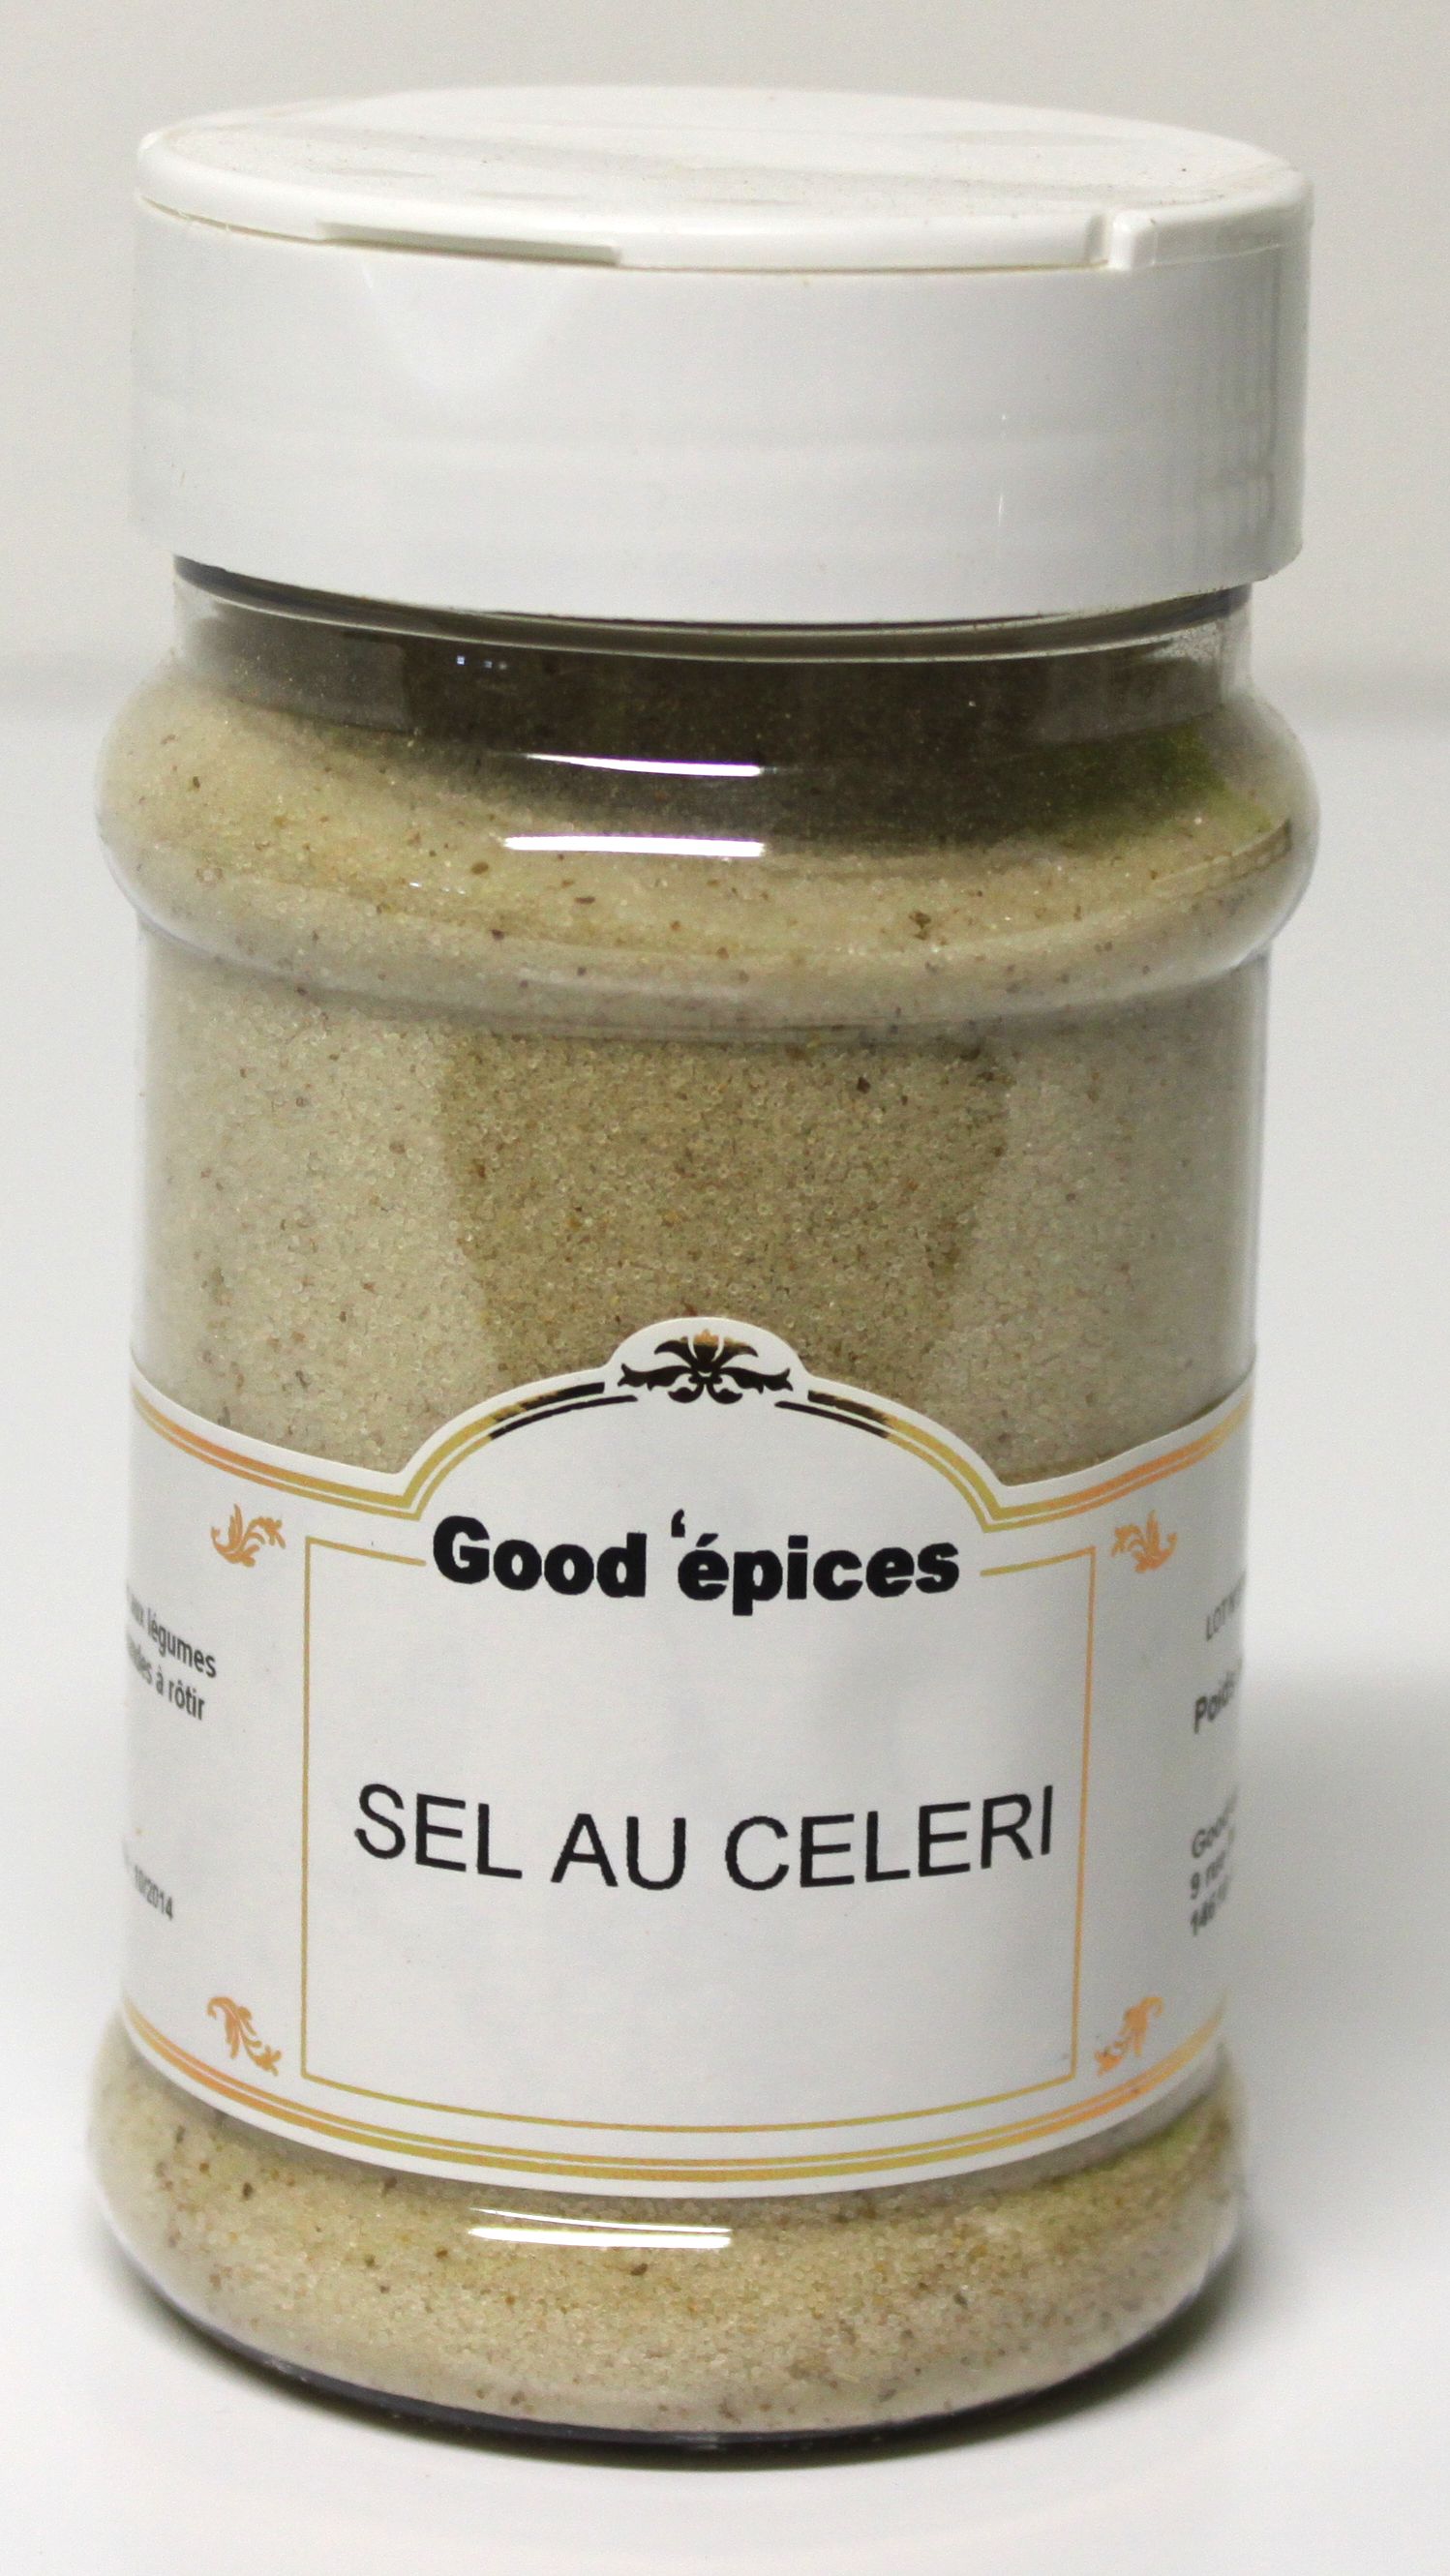 Moulin sel fin aux épices douces 80gr — Artisans du sel